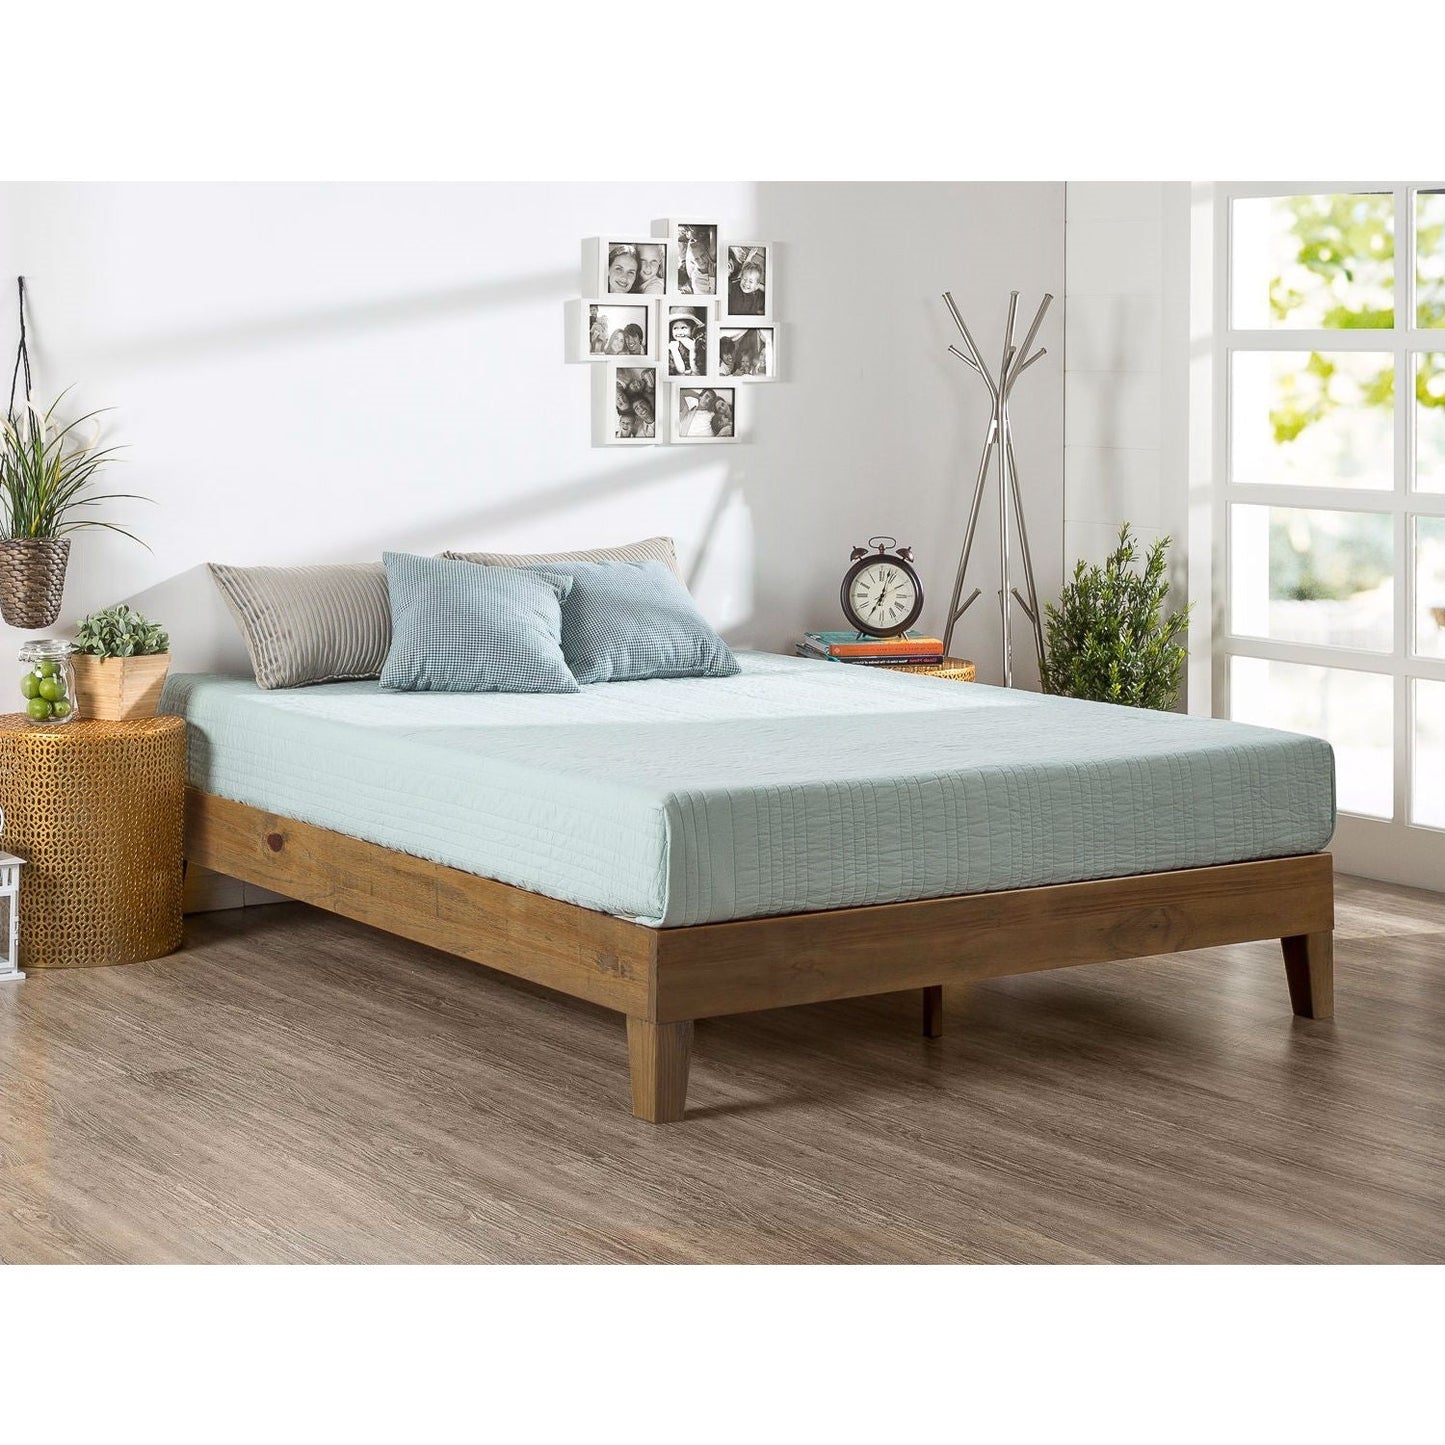 Bedroom > Bed Frames > Platform Beds - King Size Modern Platform Bed Frame In Rustic Pine Finish